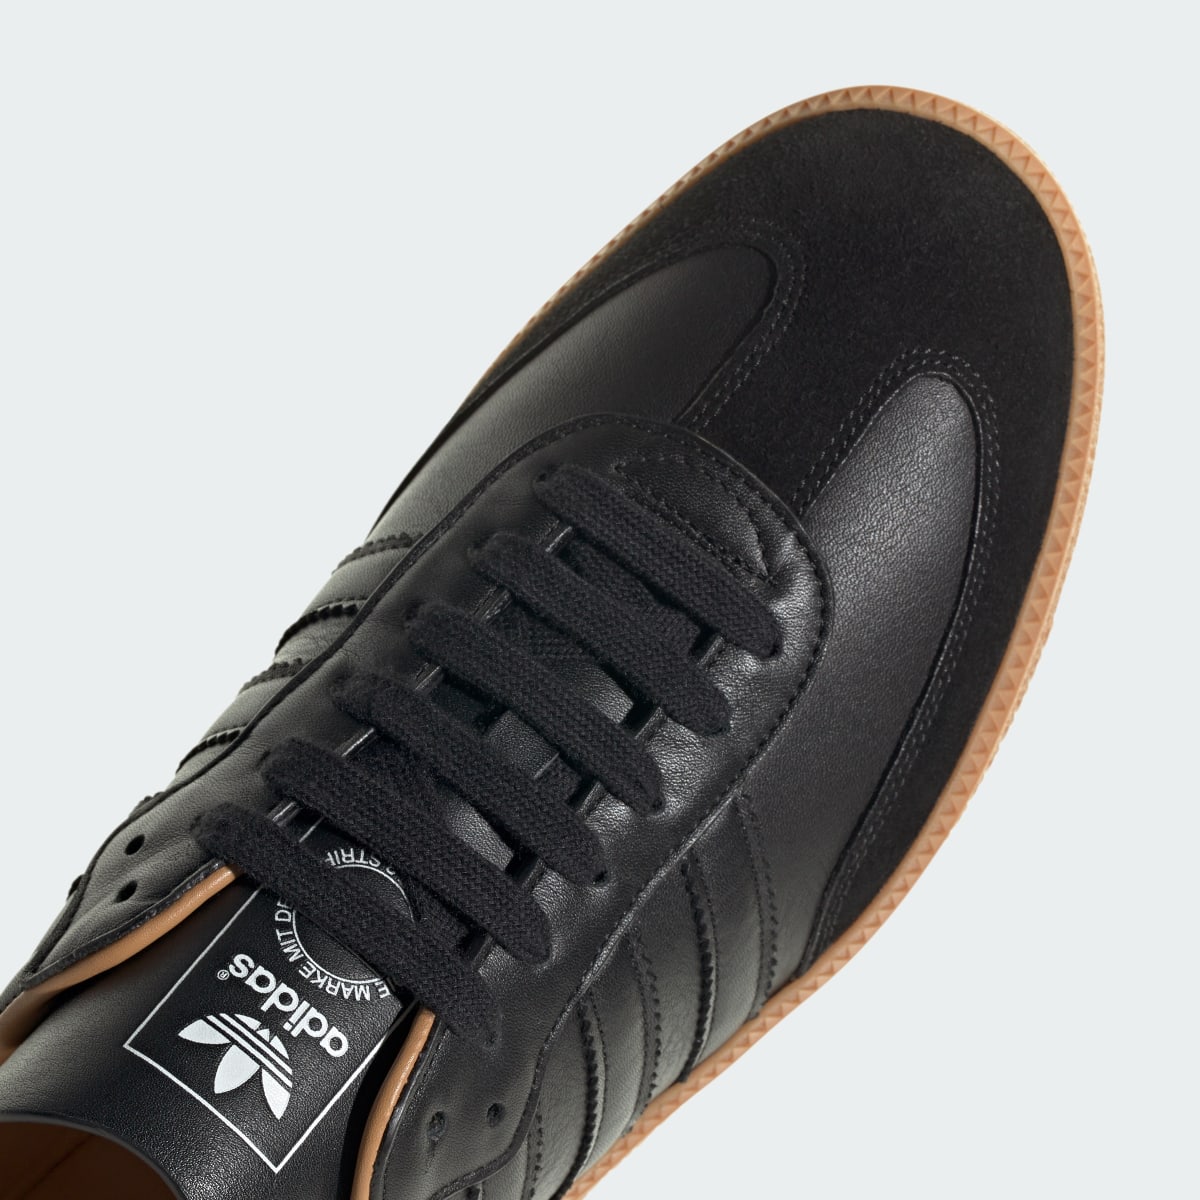 Adidas Samba OG Made In Italy Shoes. 11